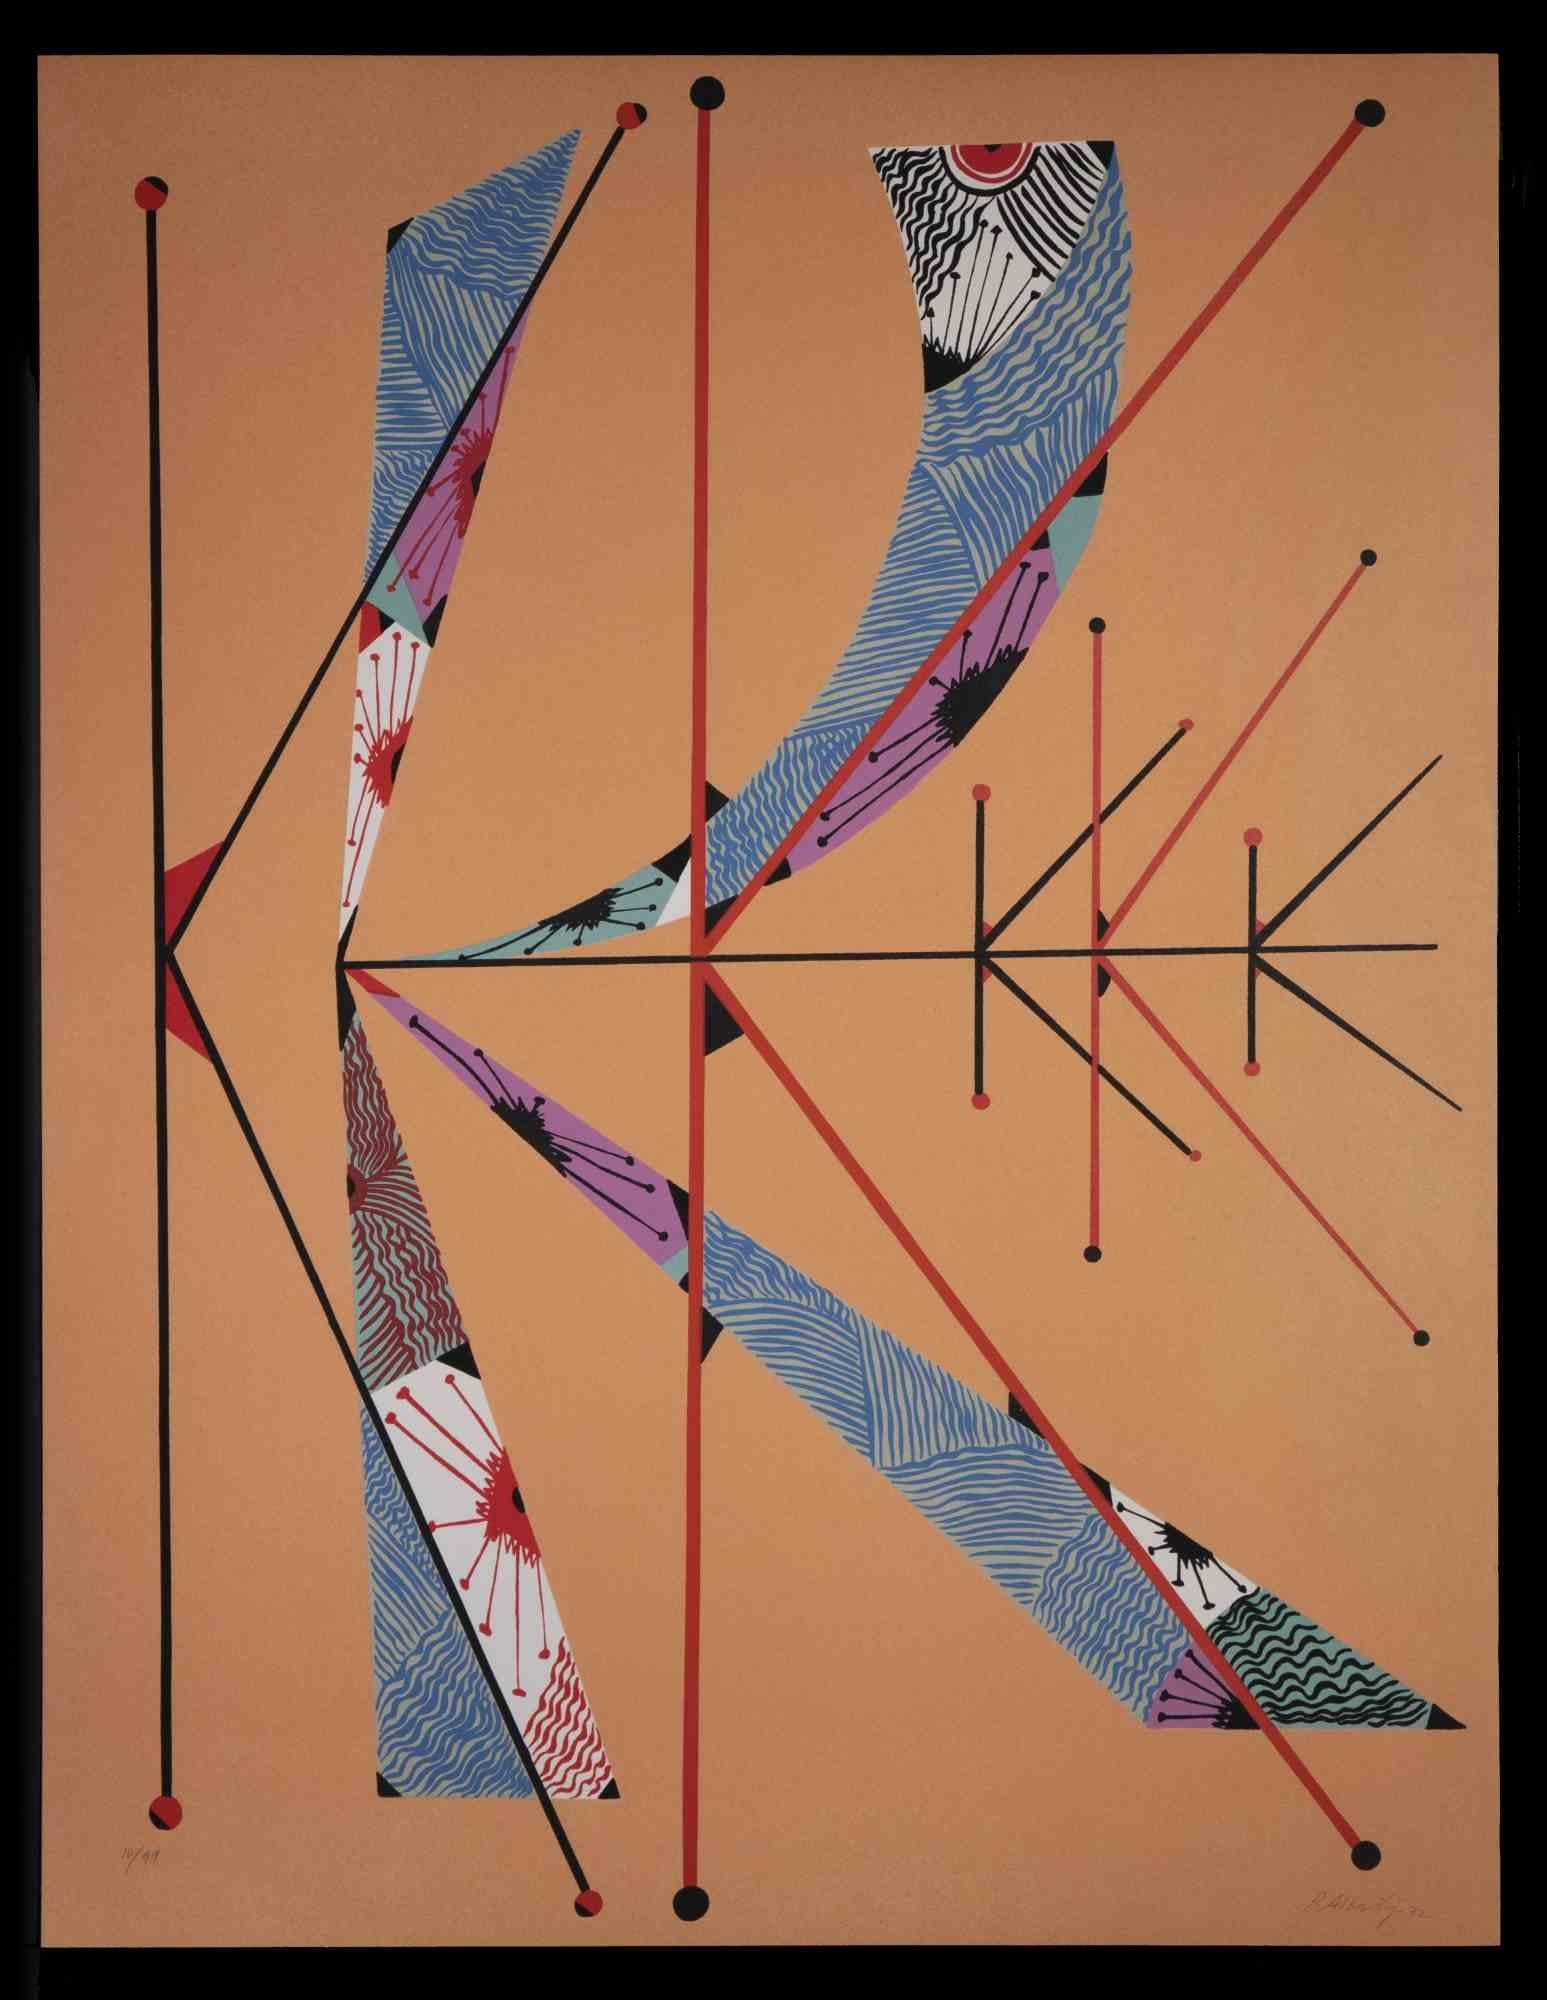 Letter K by Rafael Alberti - Original Lithograph by Rafael Alberti - 1972